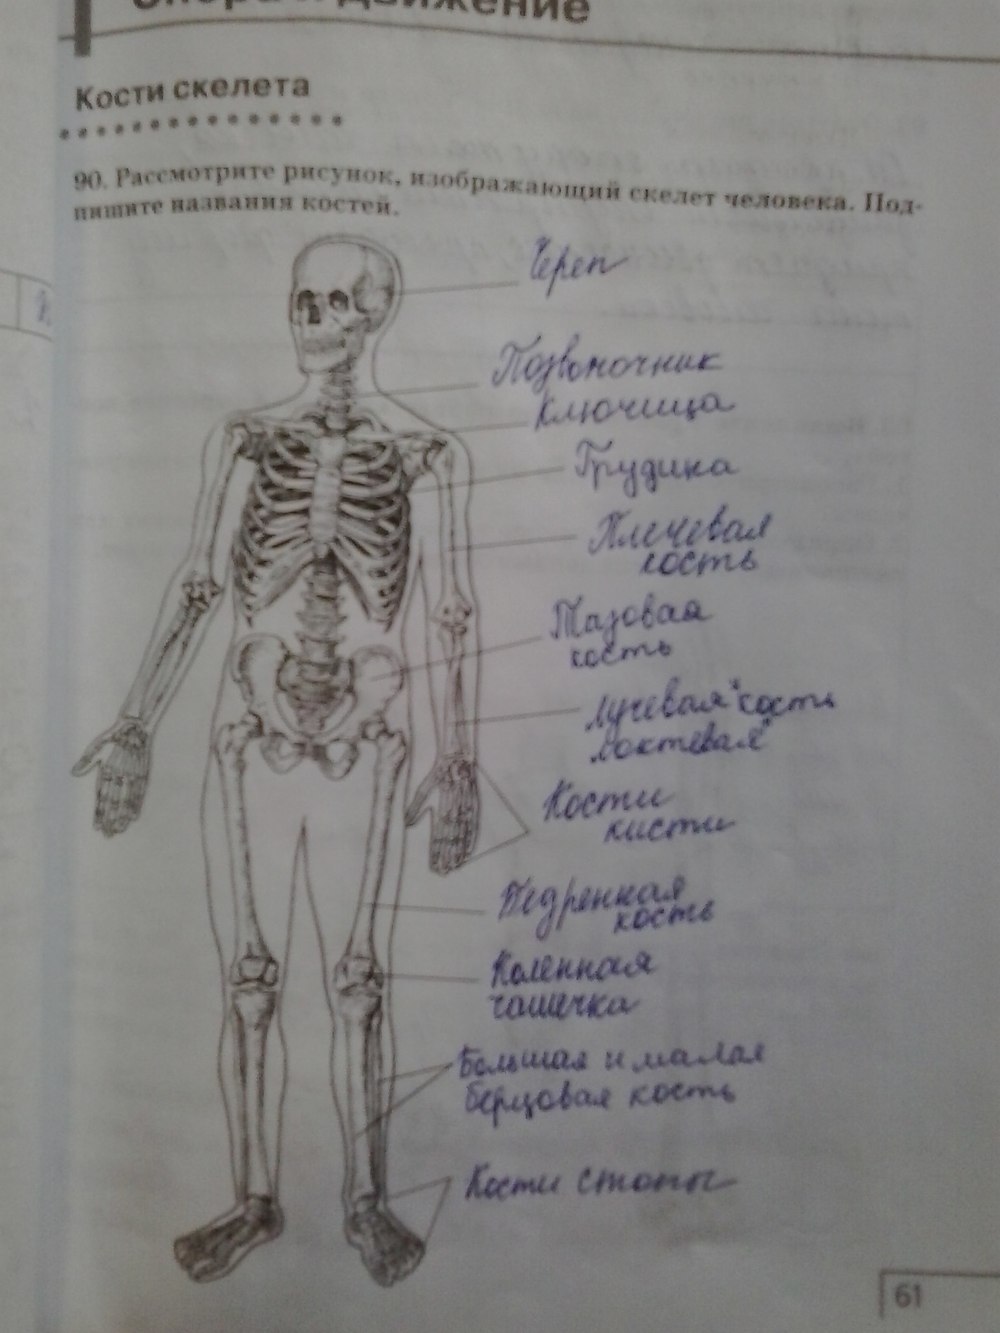 Скелет человека в тетради